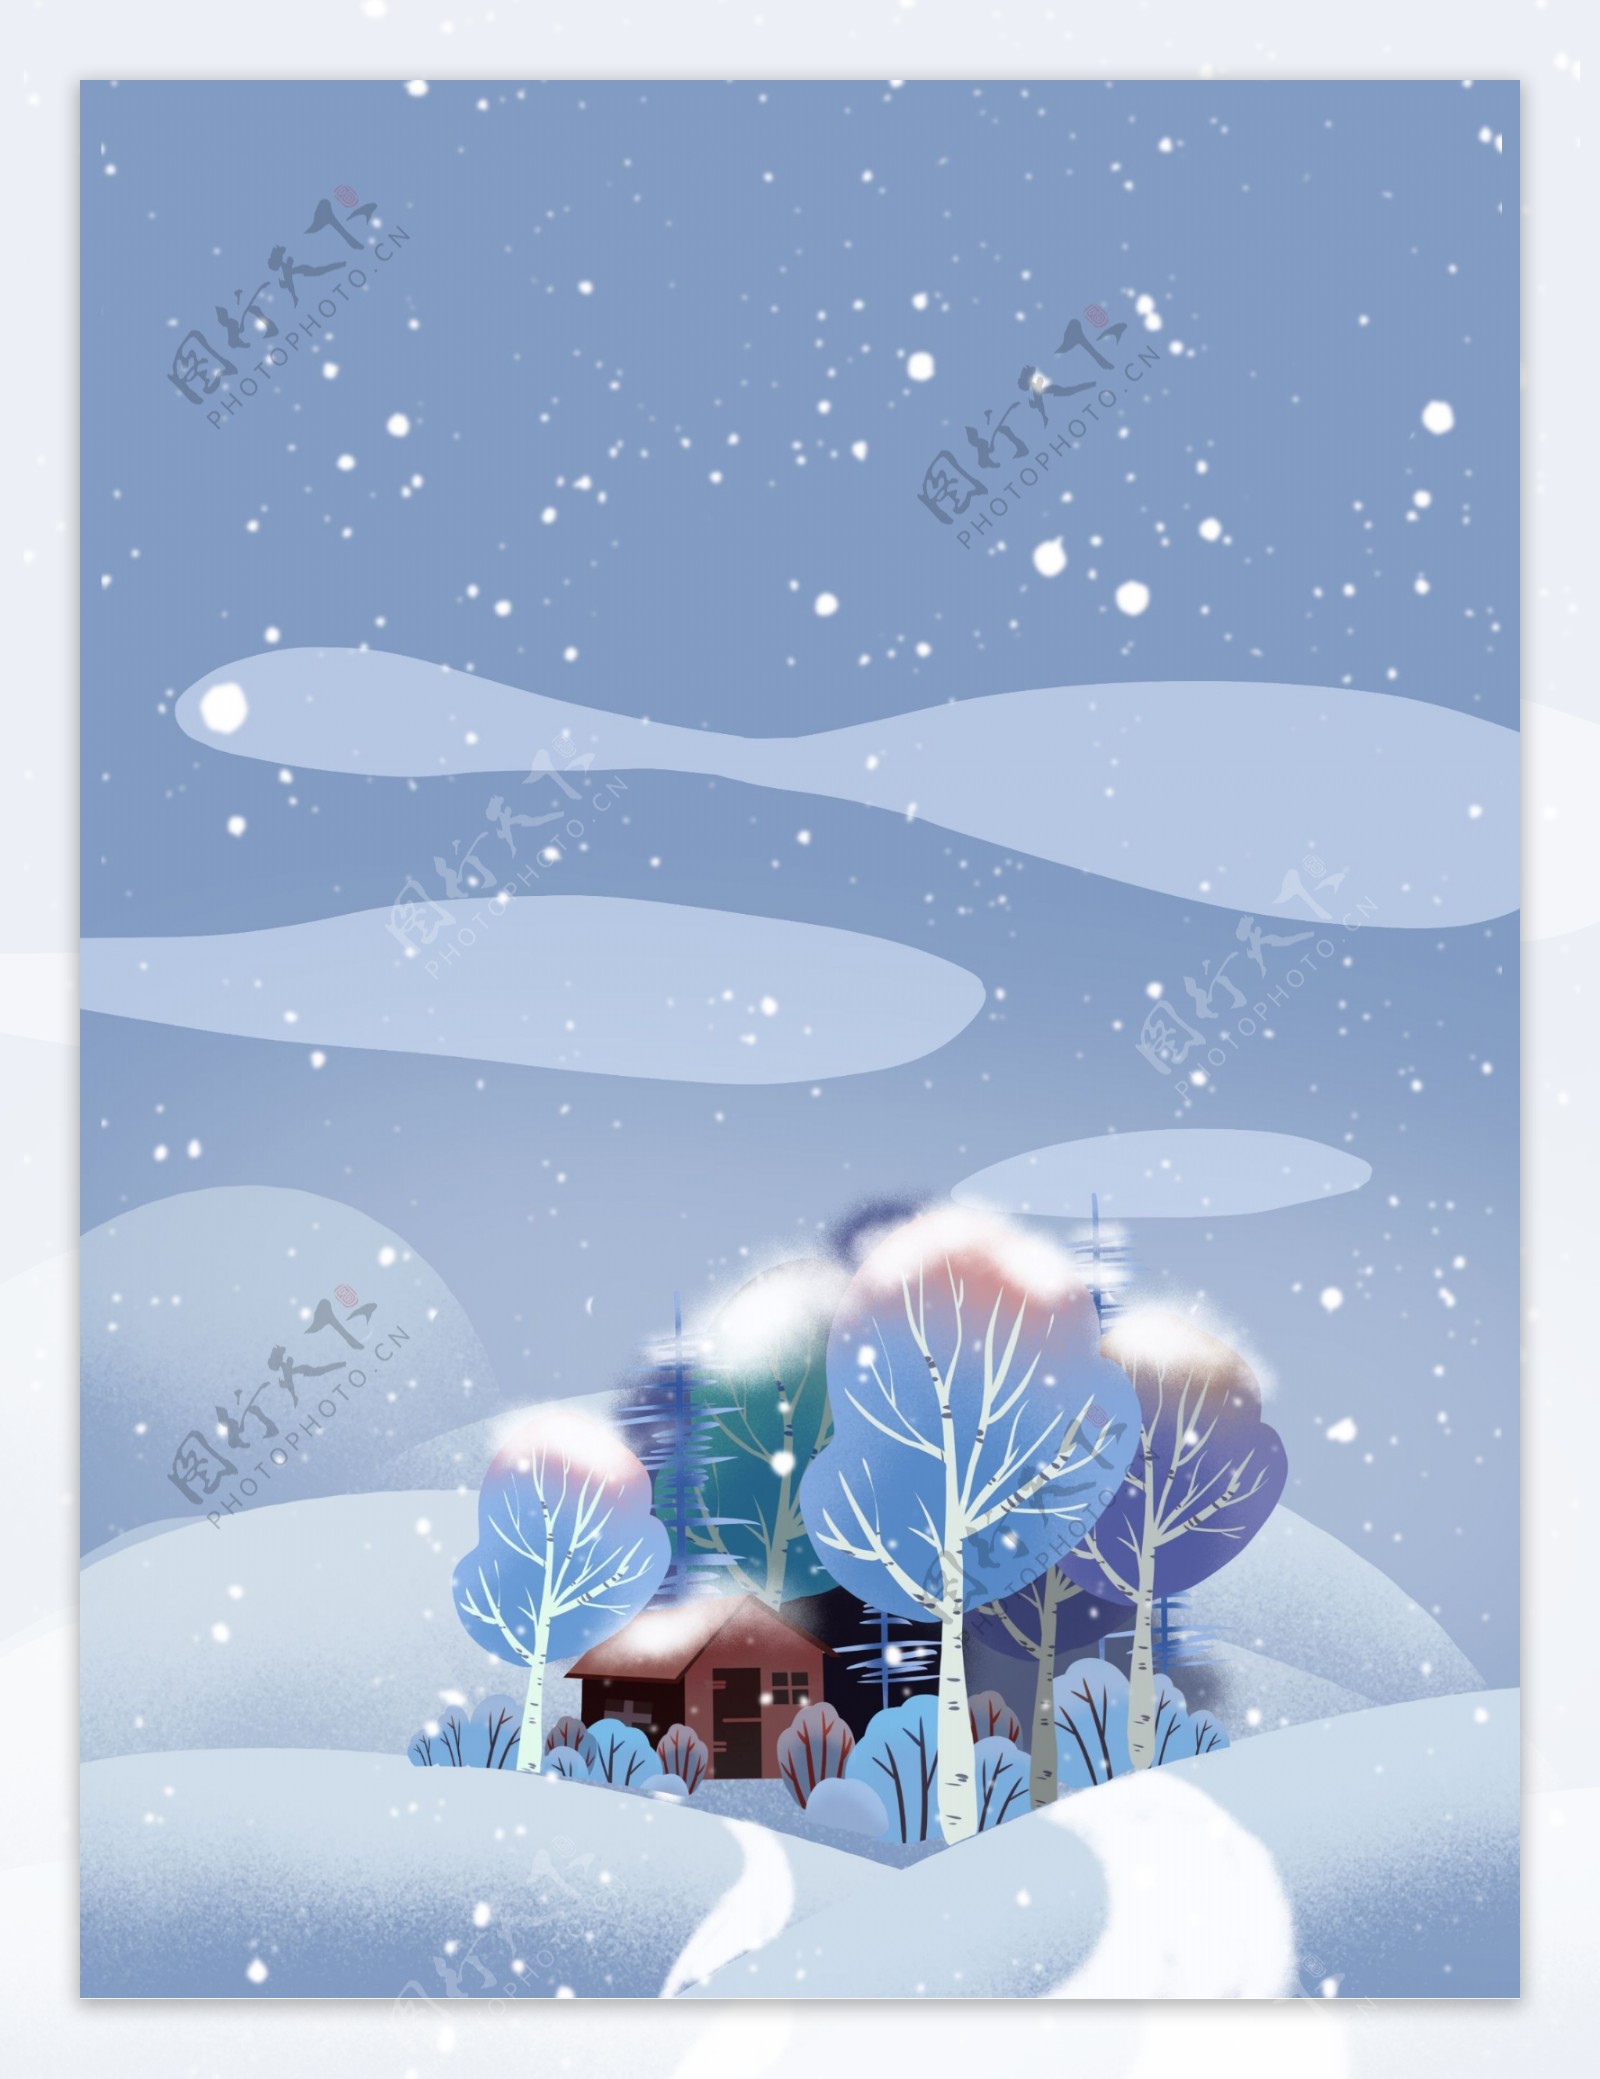 冬季雪地树林小屋背景设计